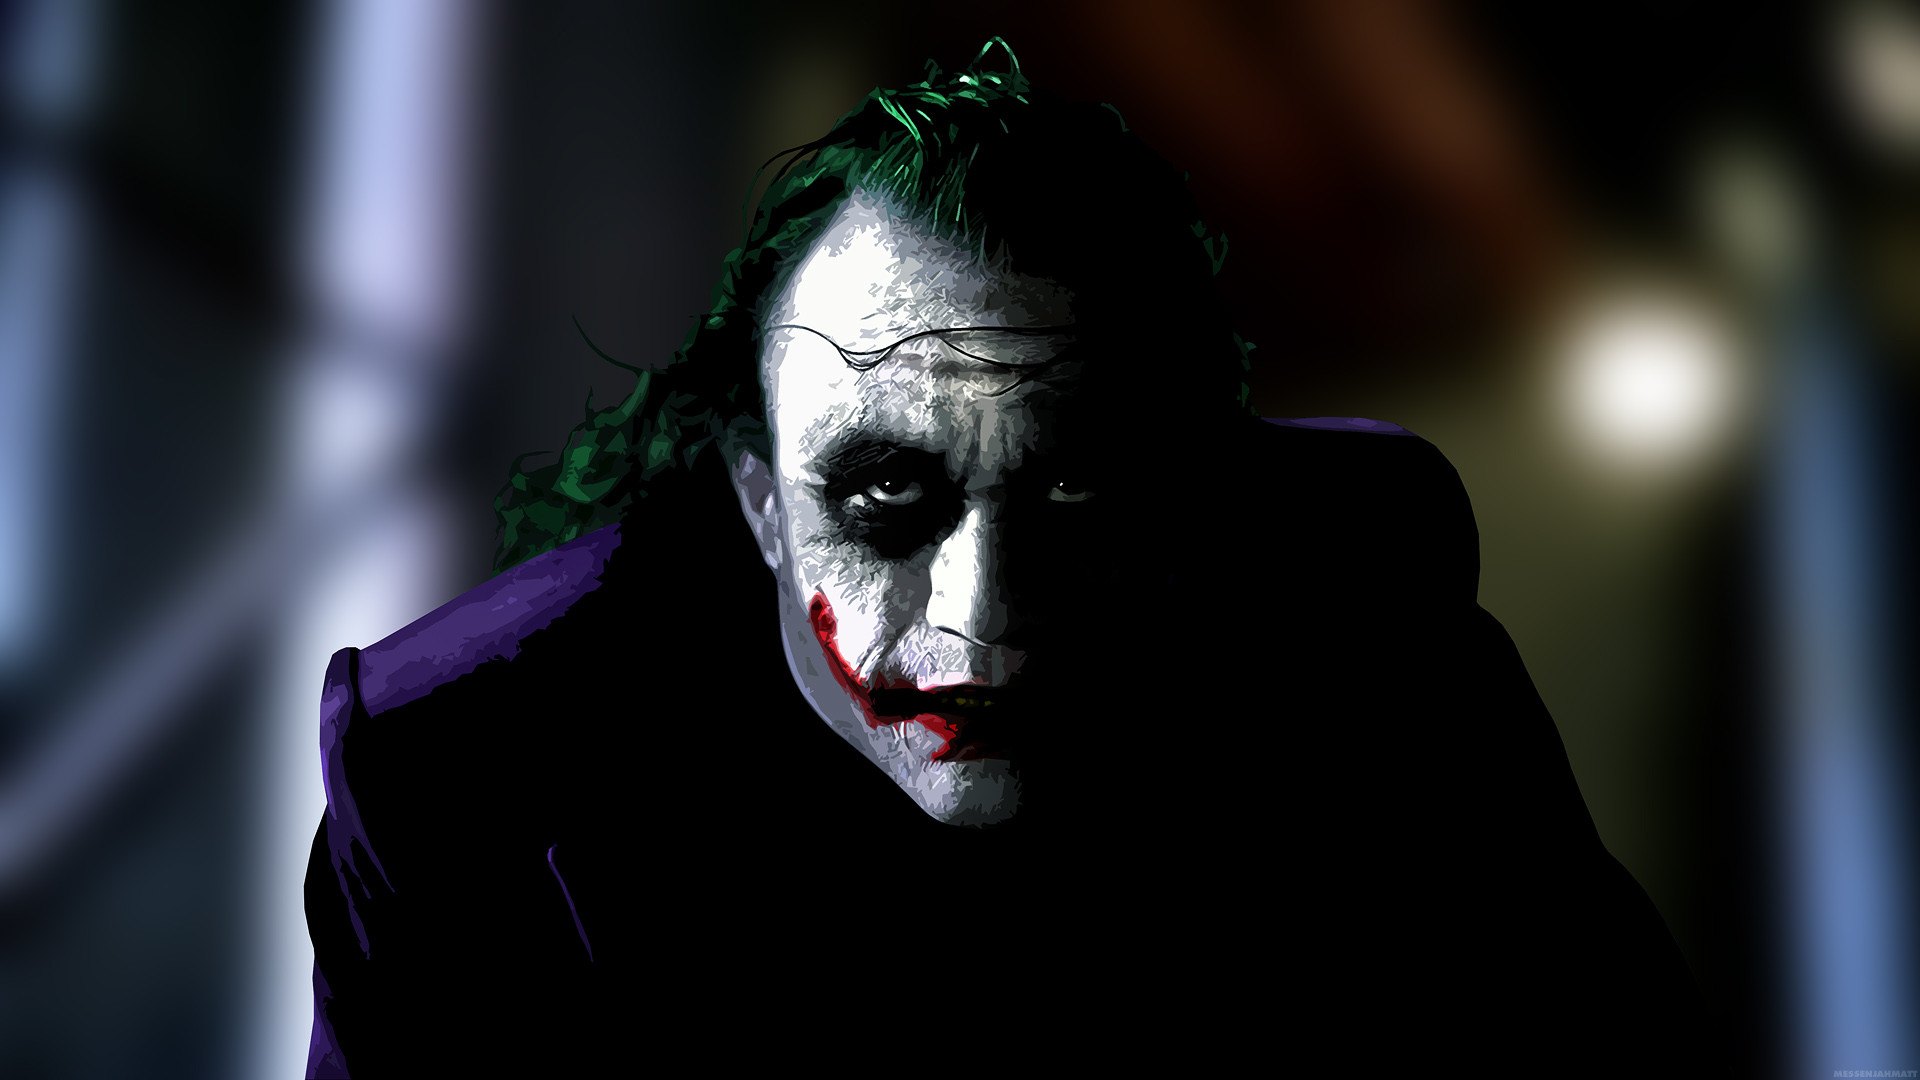 The Joker Full HD Wallpaper 1920×1080